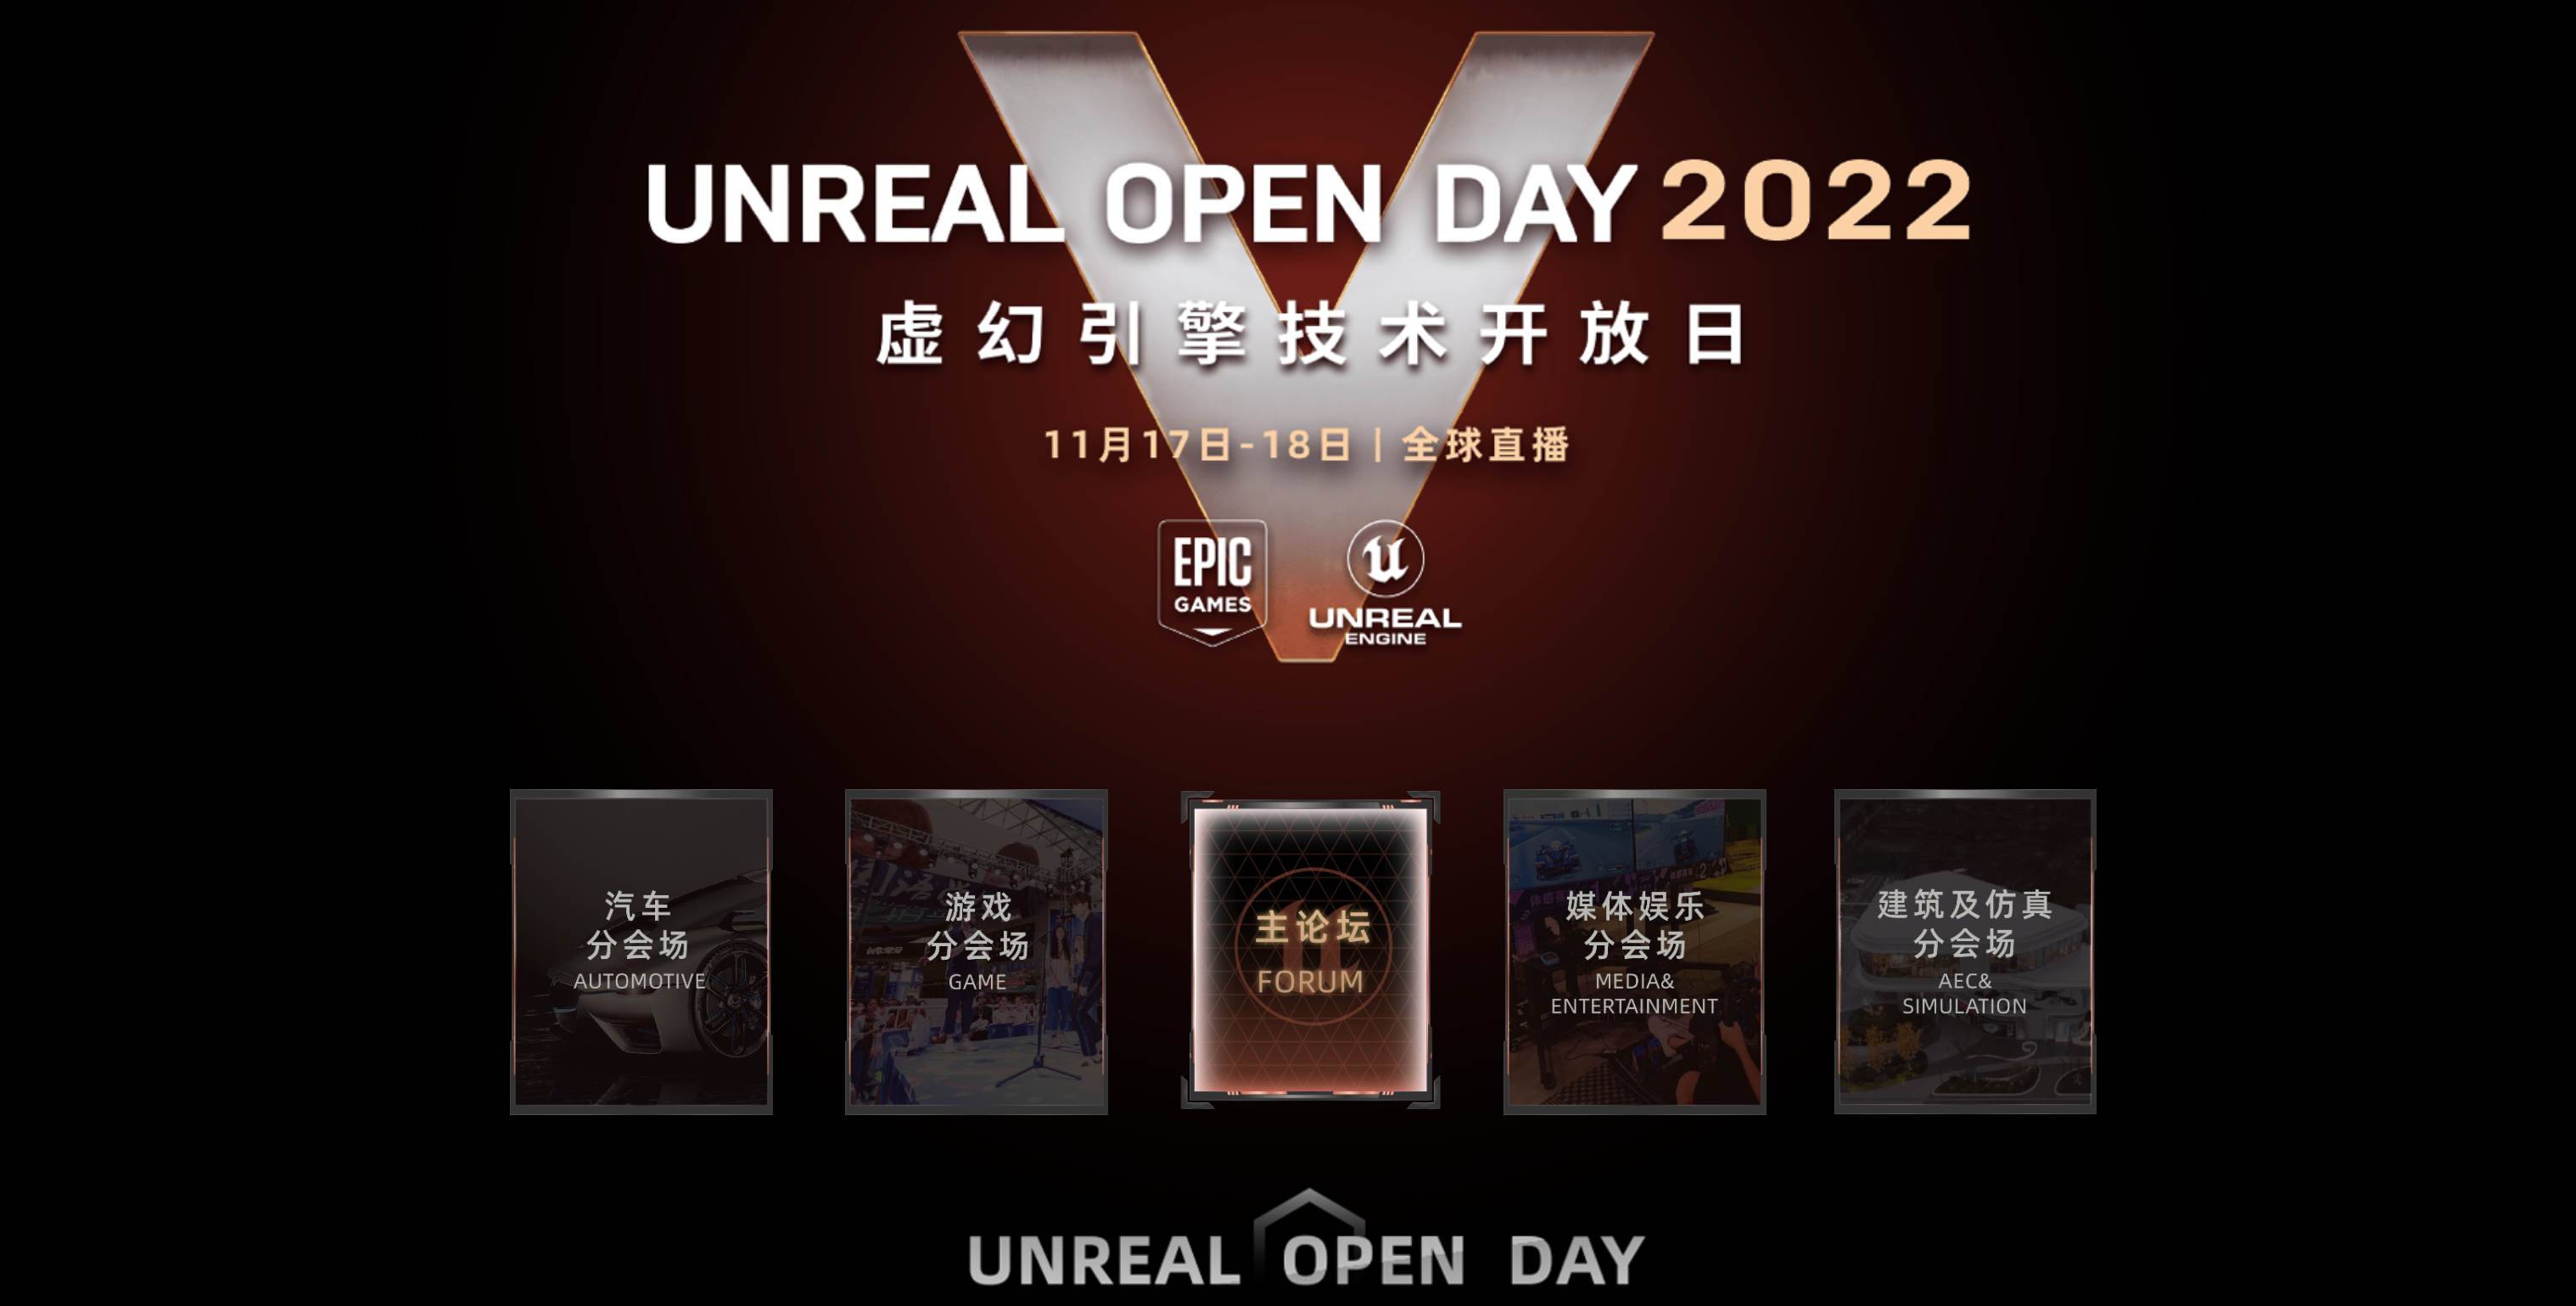 UNREAL OPEN DAY 2022虚幻引擎技术开放日11月17日全球直播